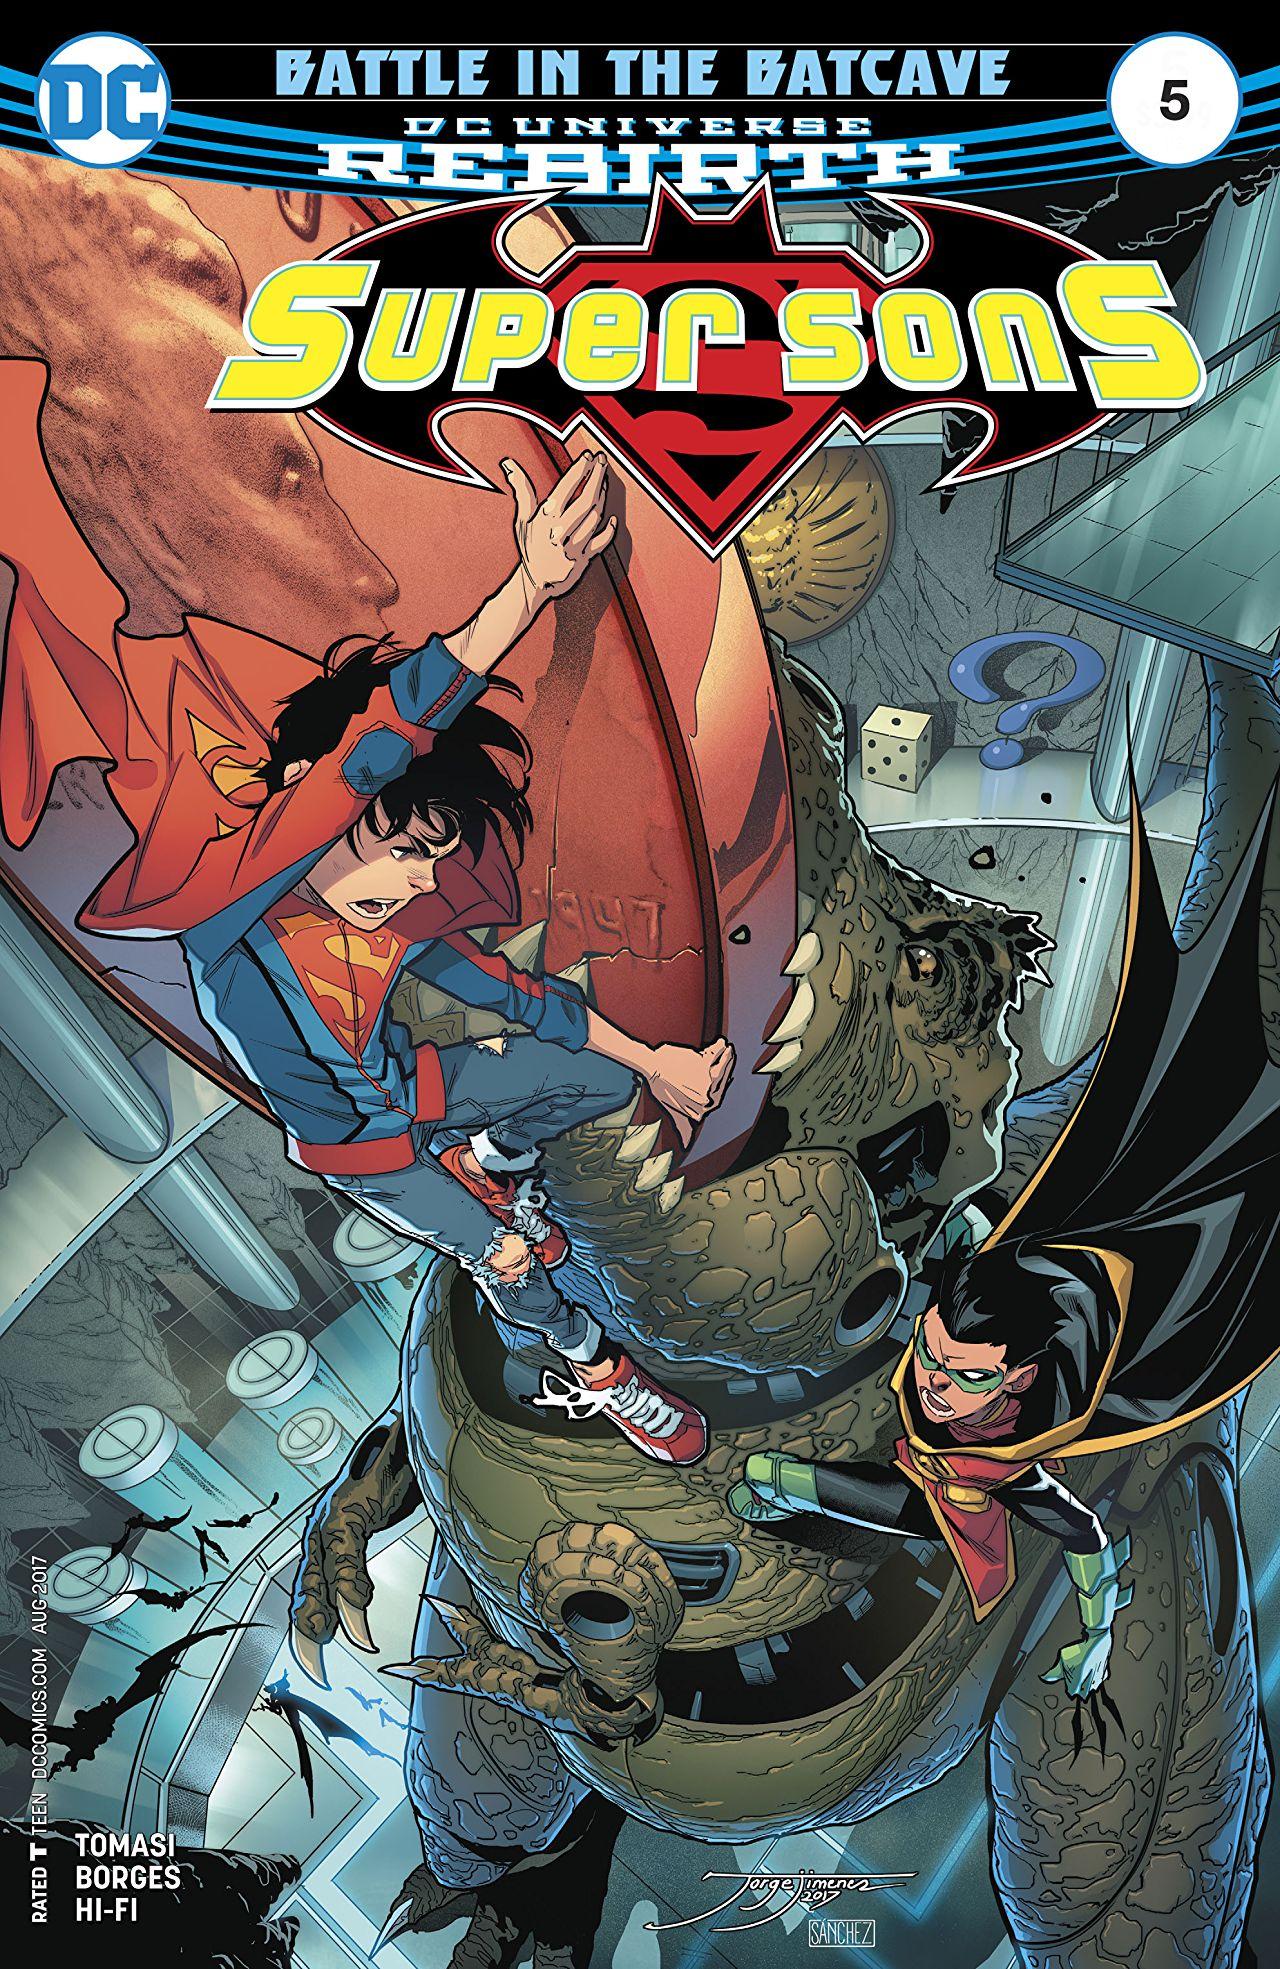 Super Sons Vol. 1 #5